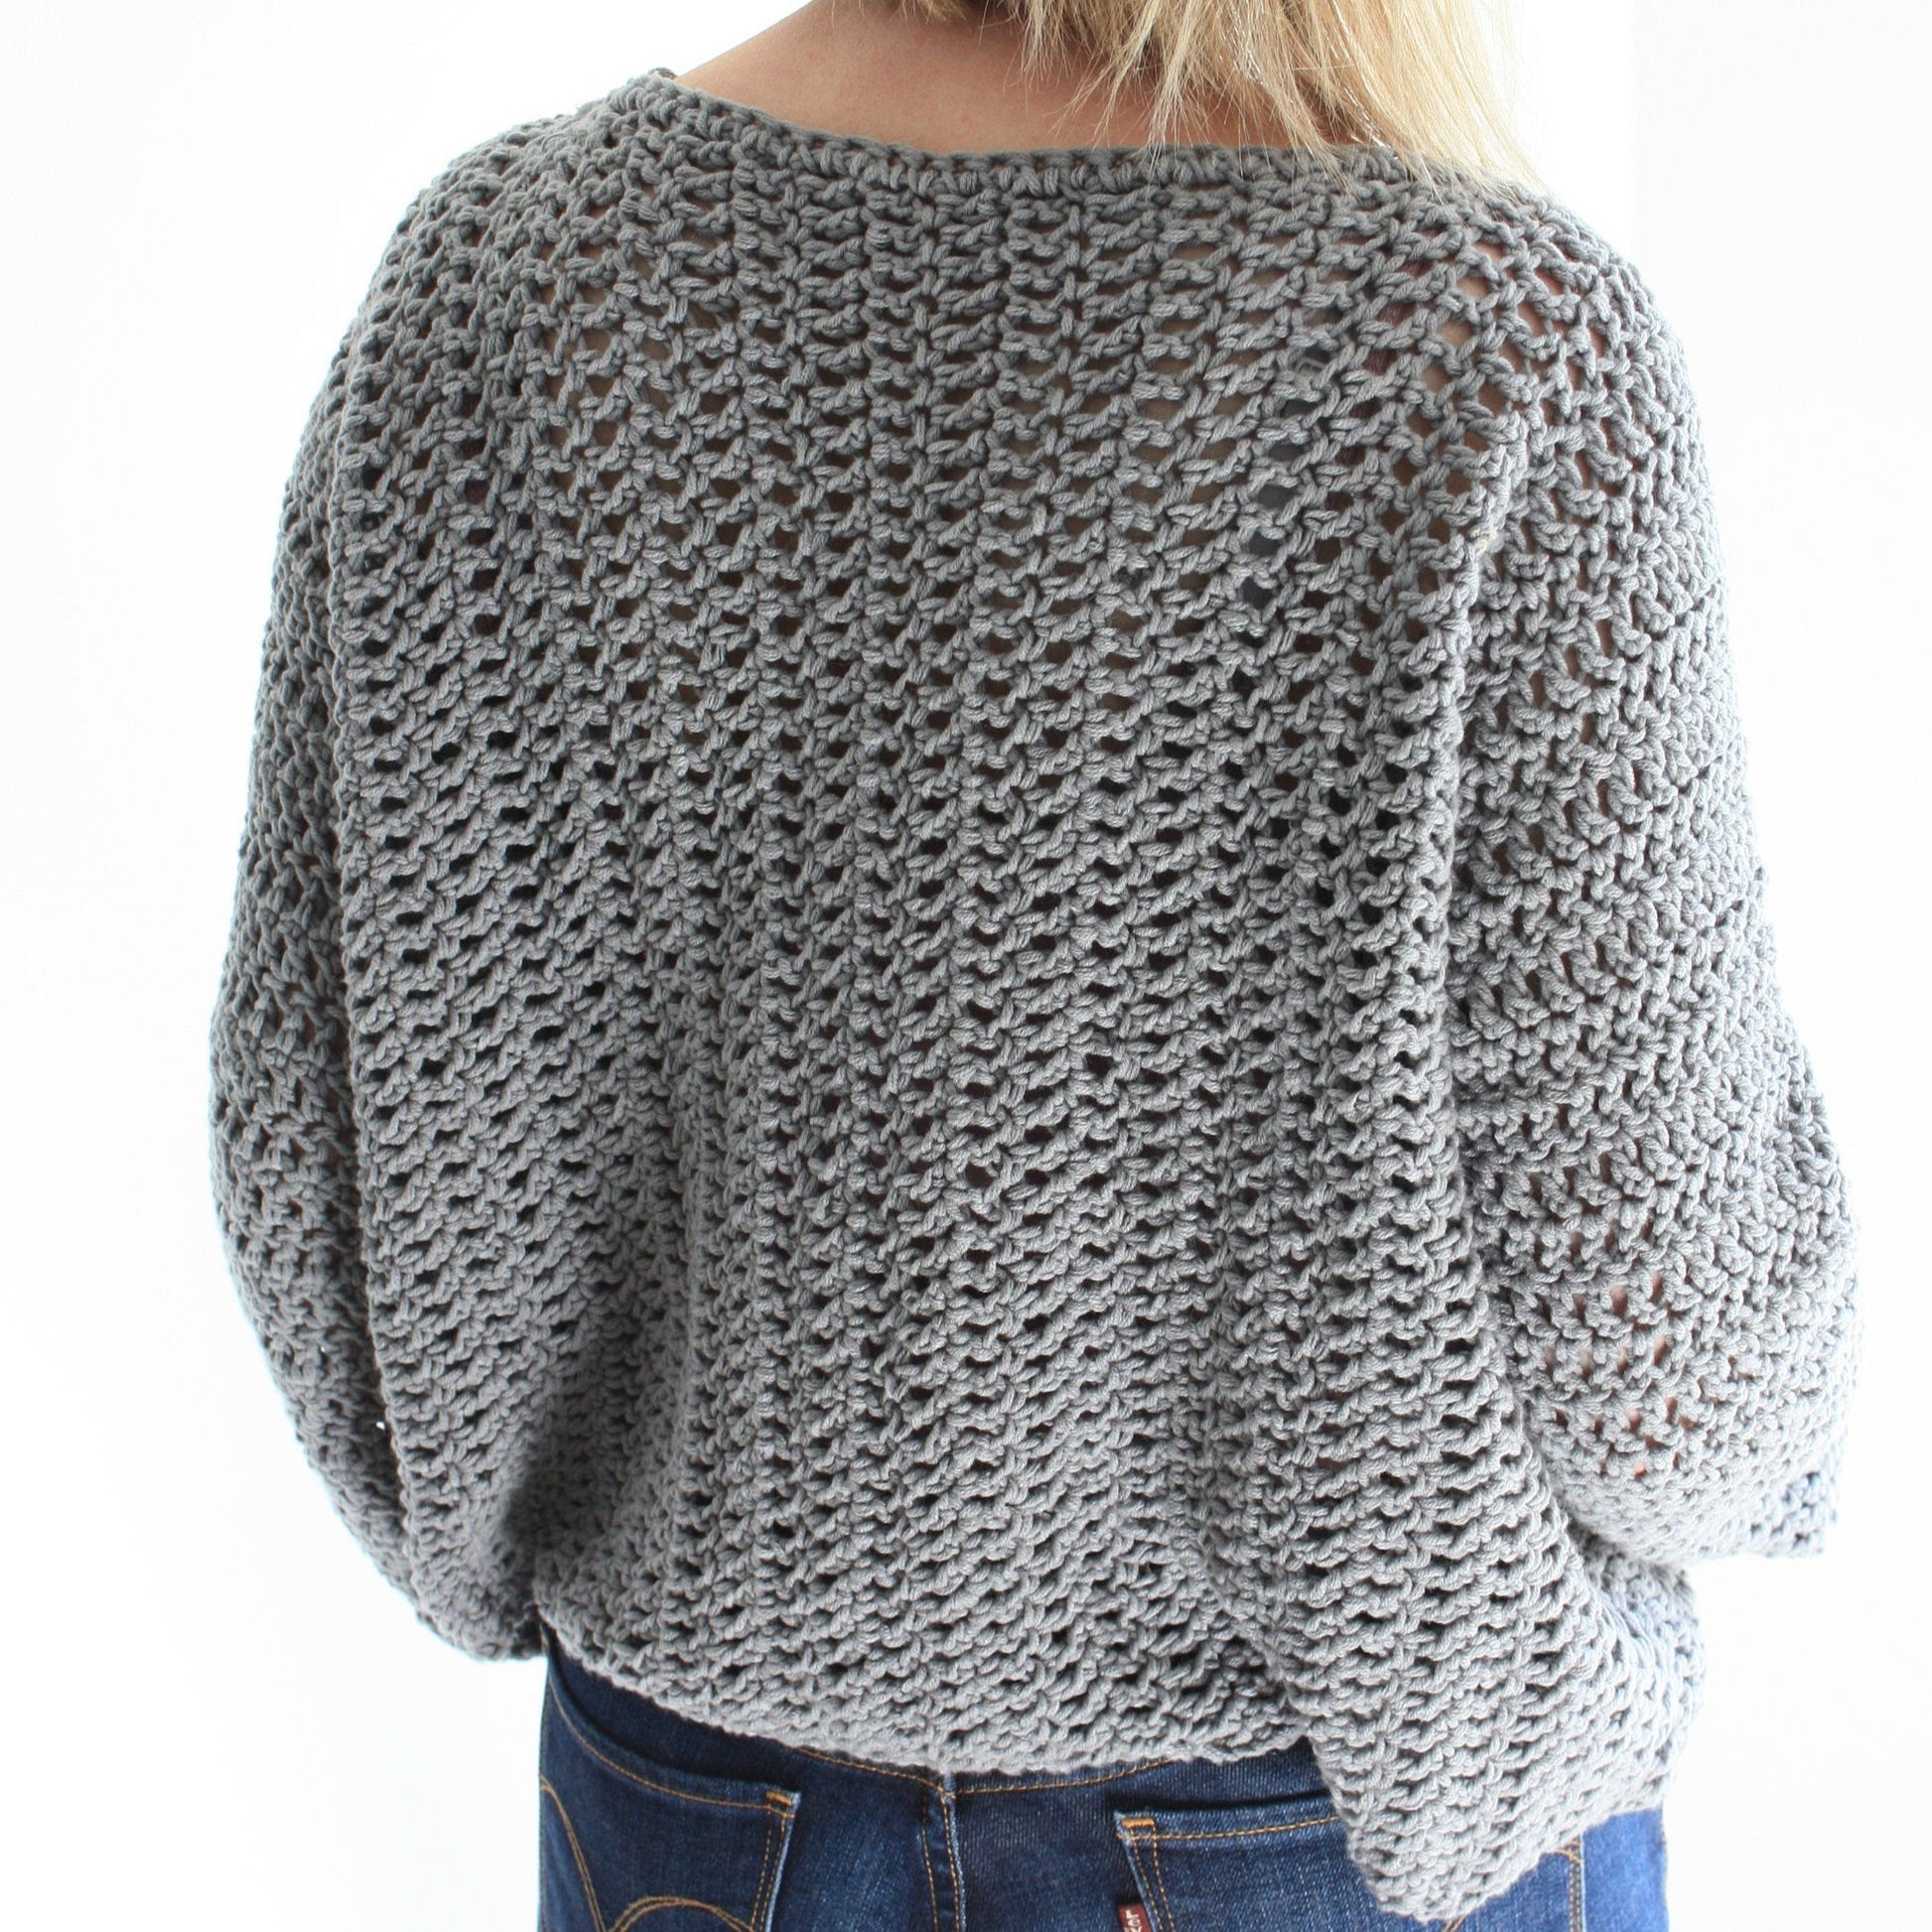 https://kingandeye.shop/cdn/shop/products/easy-crochet-pattern-tulip-time-sweater-126928.jpg?v=1698421603&width=1946